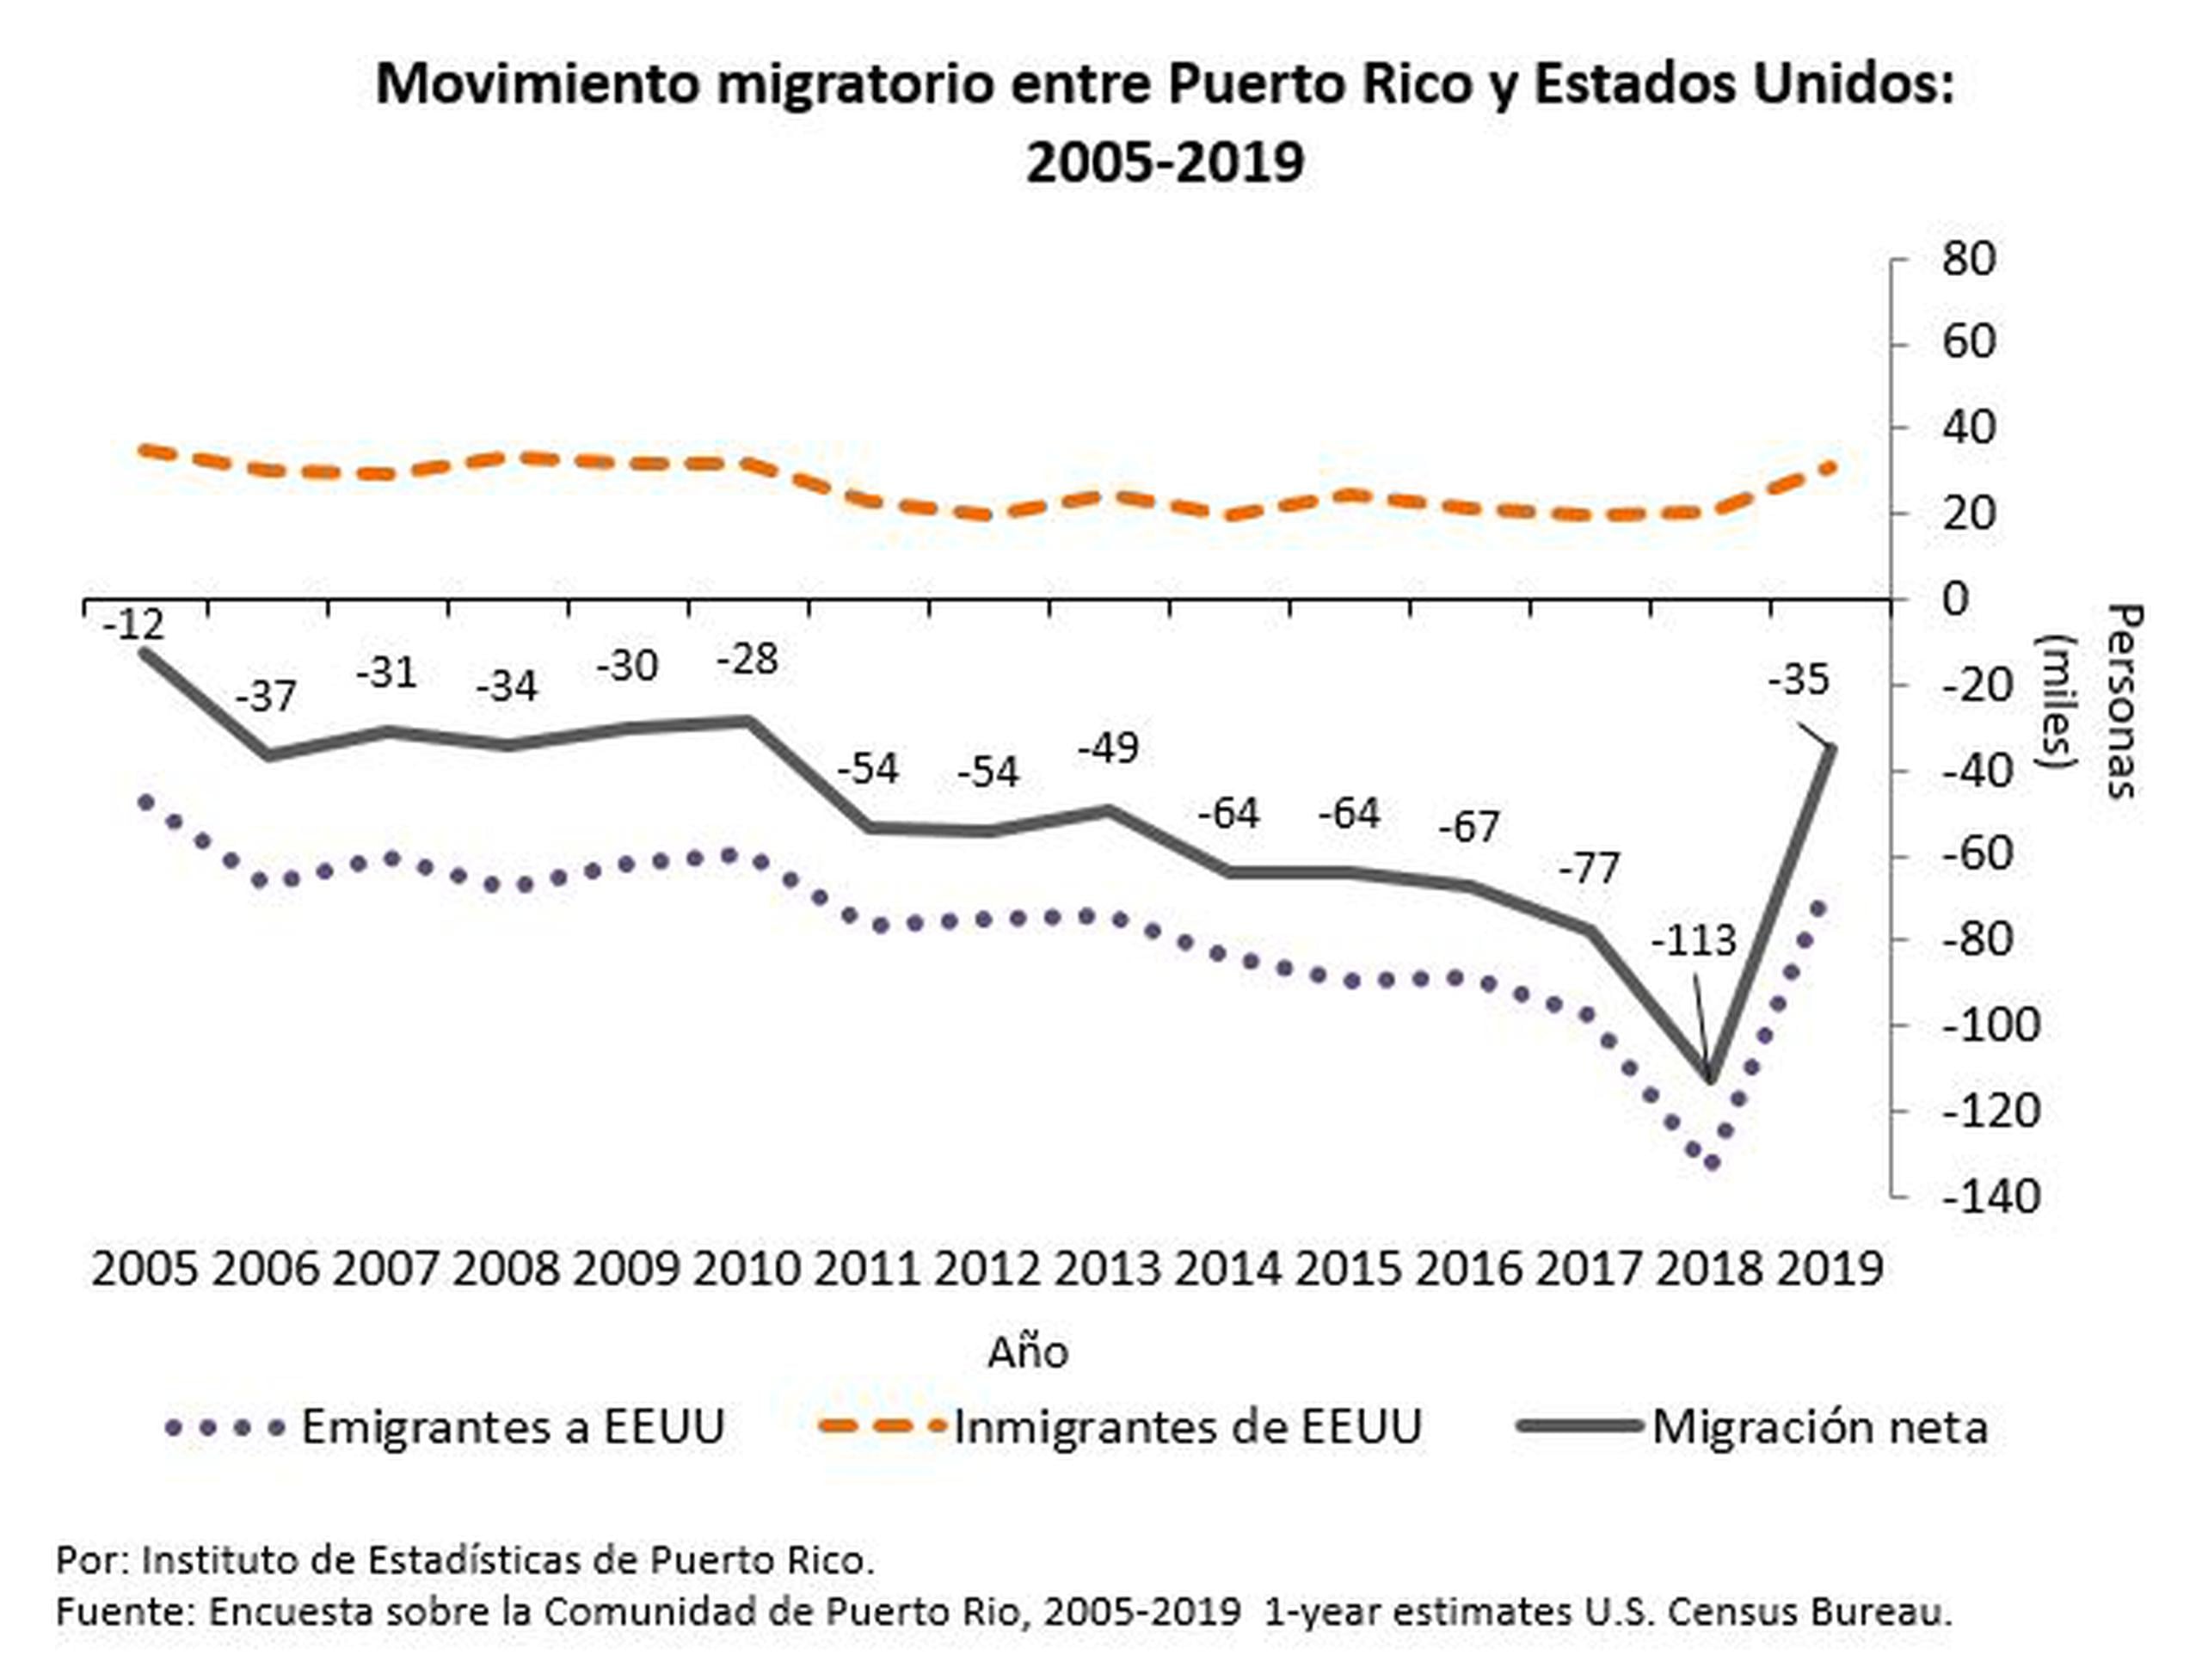 Nuevos datos de la Encuesta sobre la Comunidad de Puerto Rico (2019).